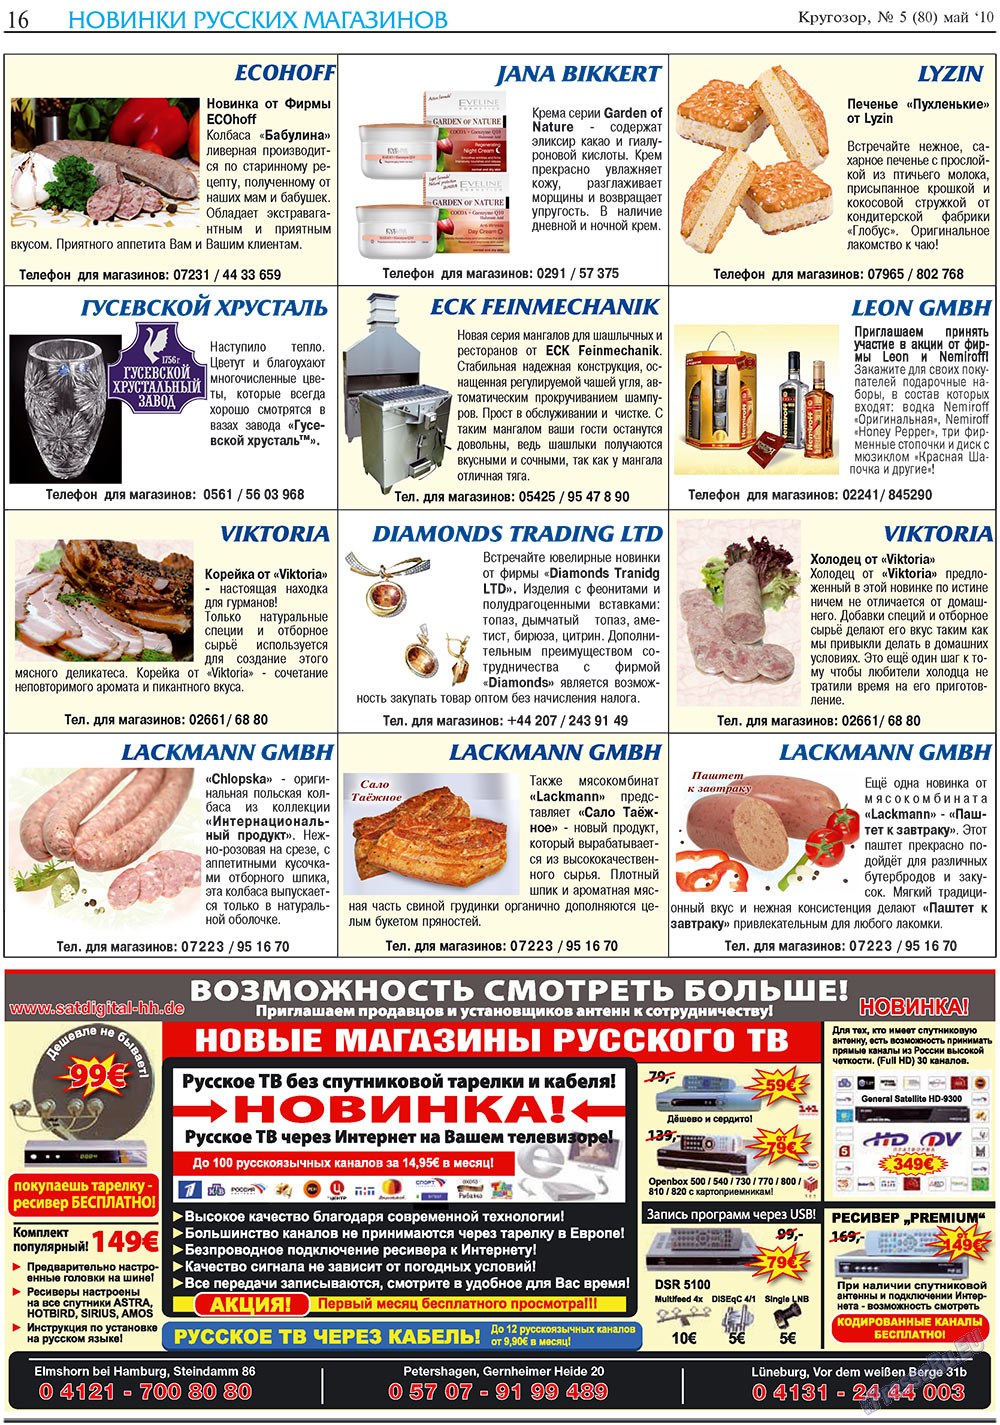 Кругозор плюс!, газета. 2010 №5 стр.16